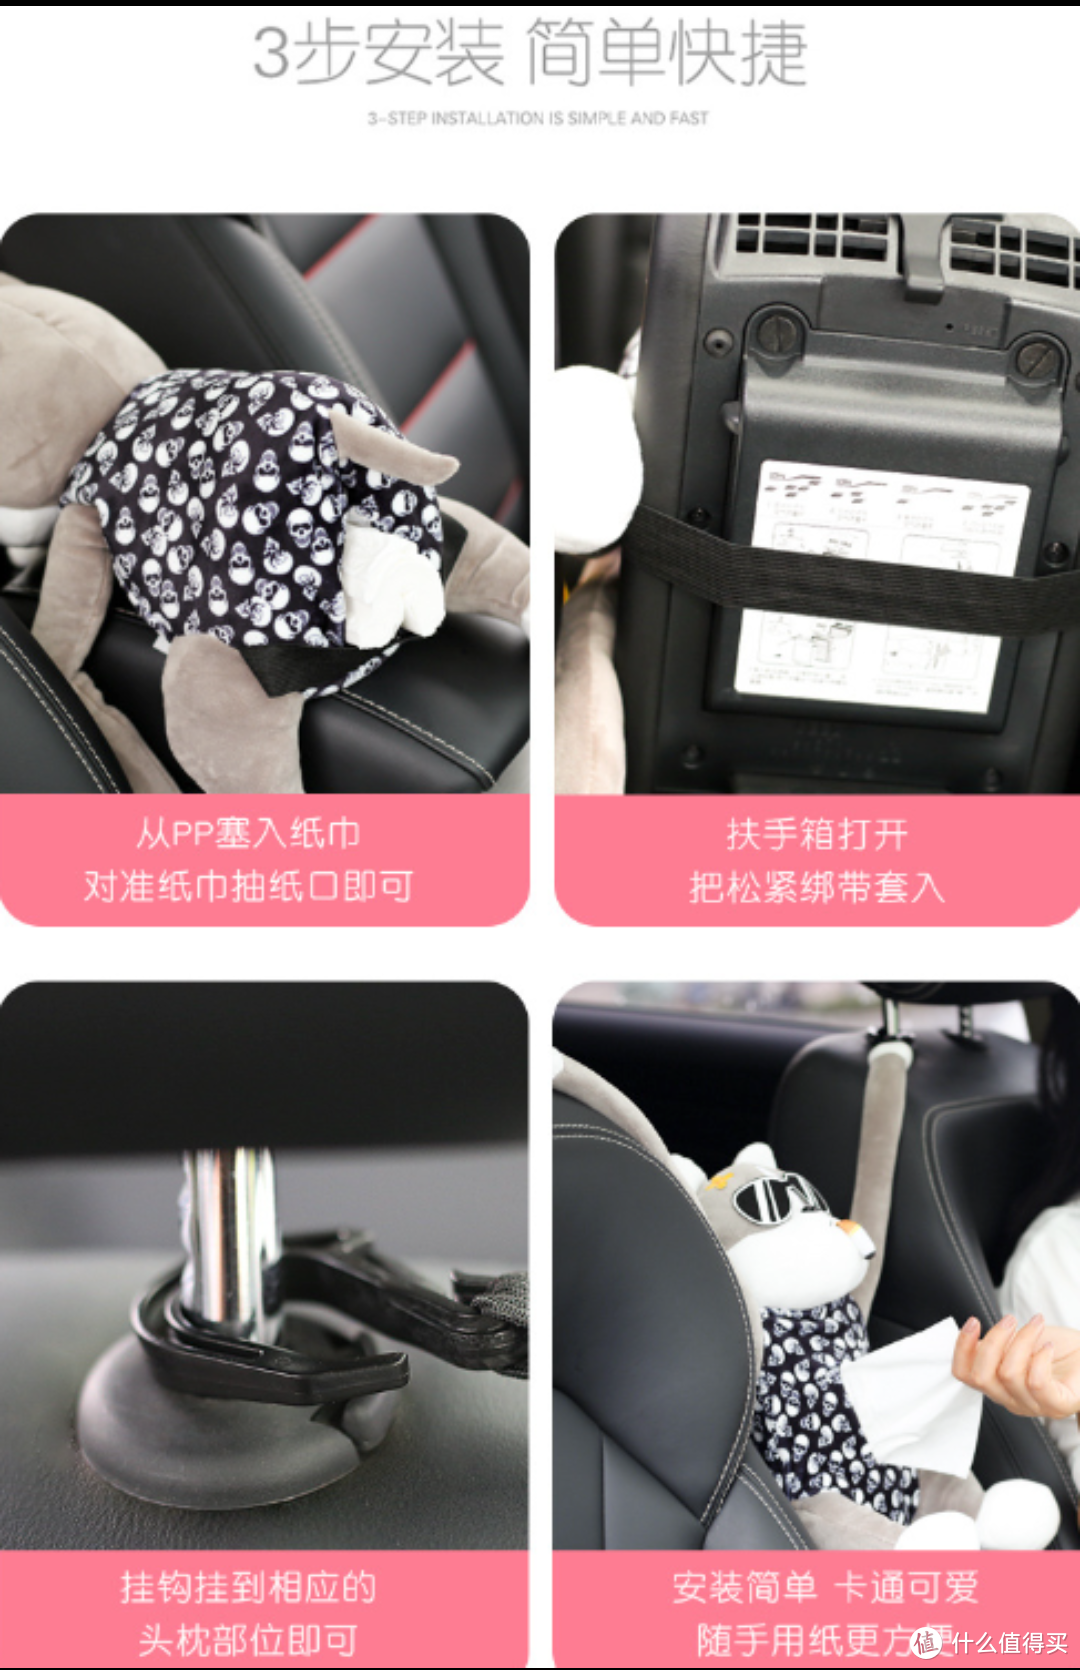 迪加伦 汽车用挂式纸巾盒——给你的车内装饰带来创意和乐趣